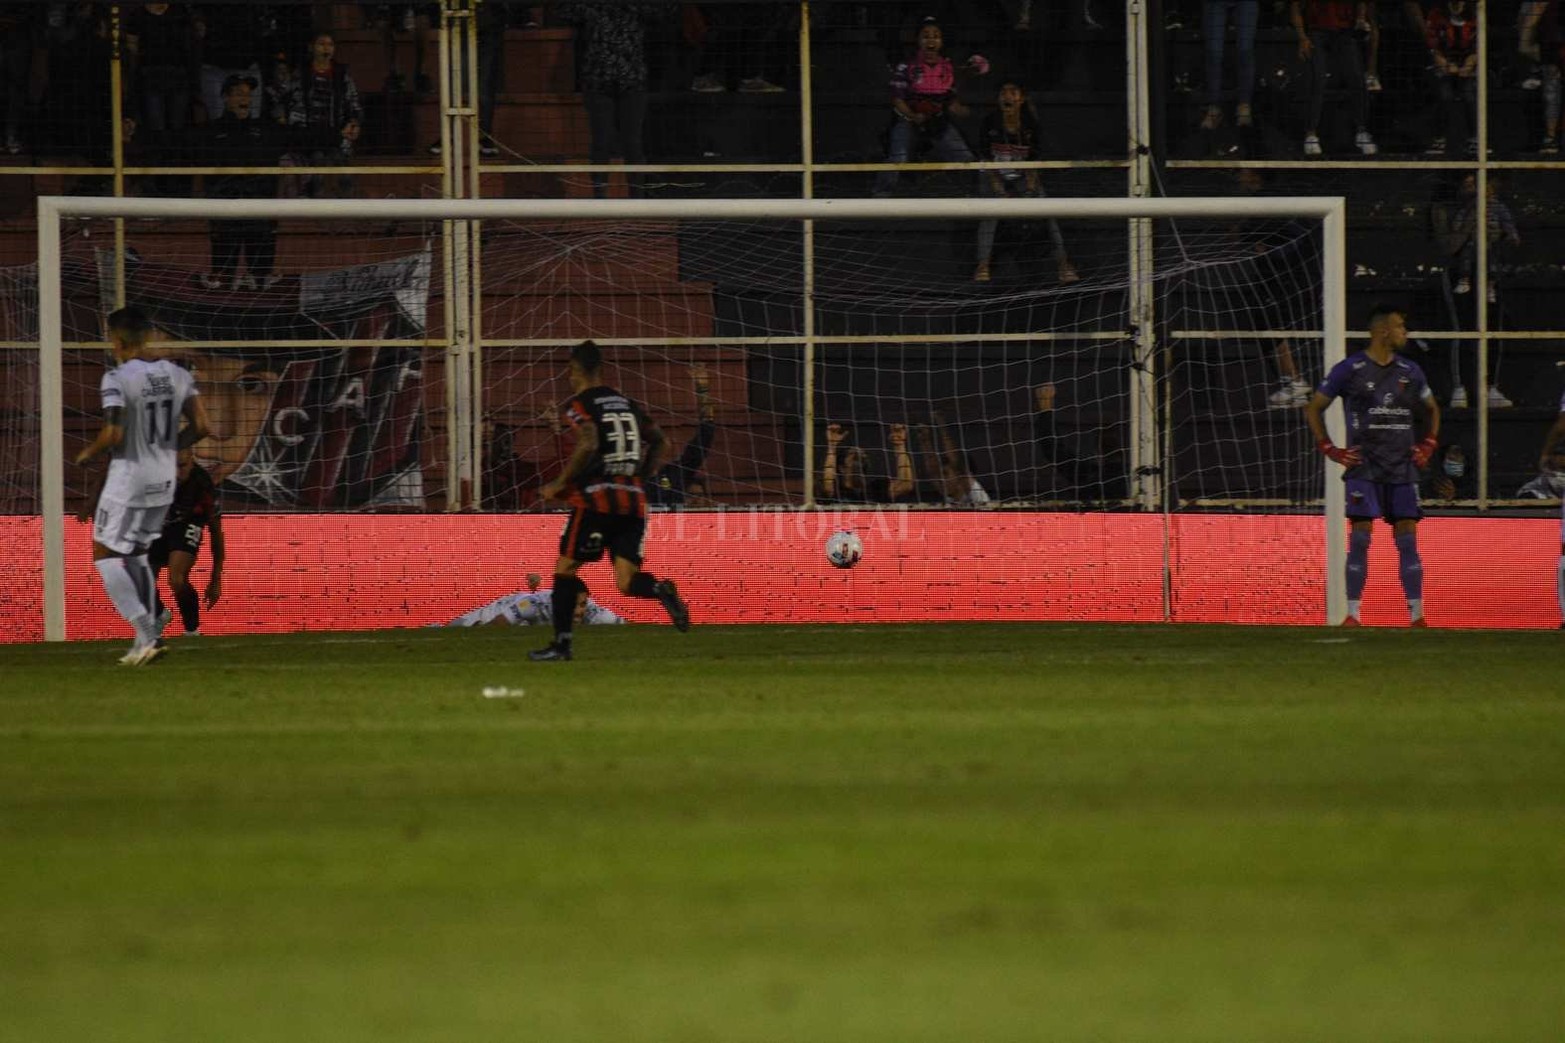 El segundo gol. En Paraná Colón perdió 2 a 0 contra Patronato, equipo que hacía 12 partidos que no ganaba.